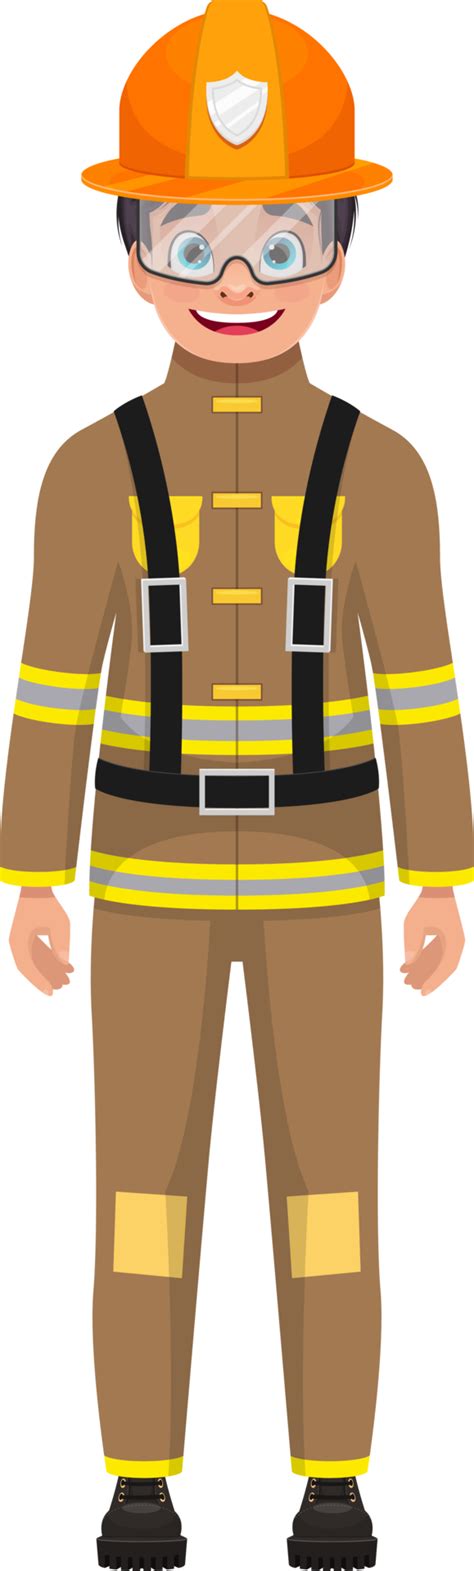 Boy Firefighter Clipart Design Illustration 9398180 Png